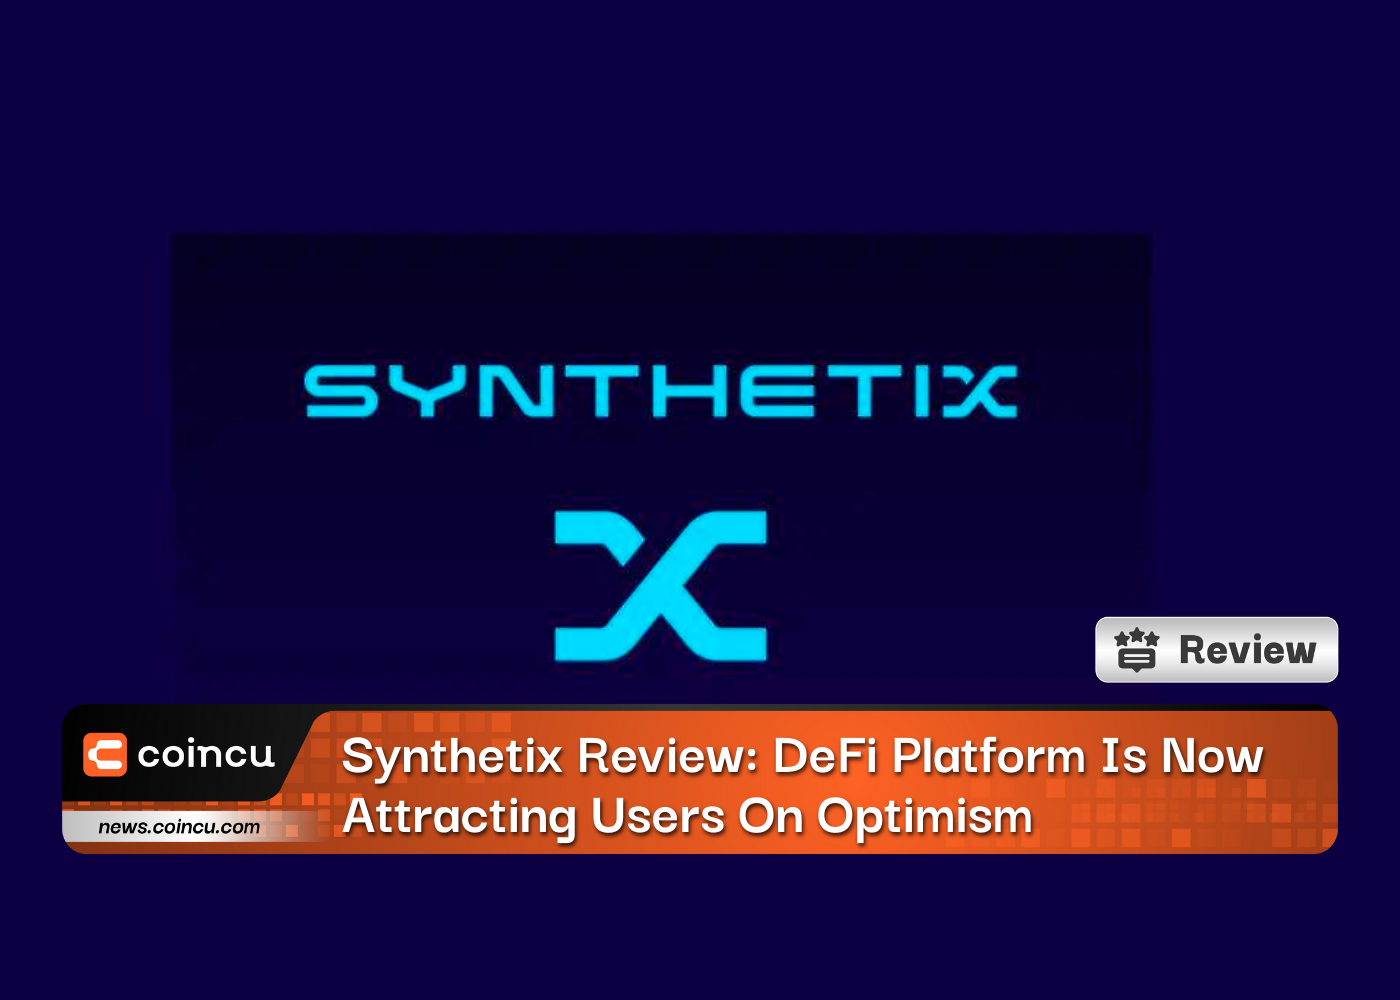 Revisão do Synthetix: a plataforma DeFi agora está atraindo usuários com otimismo